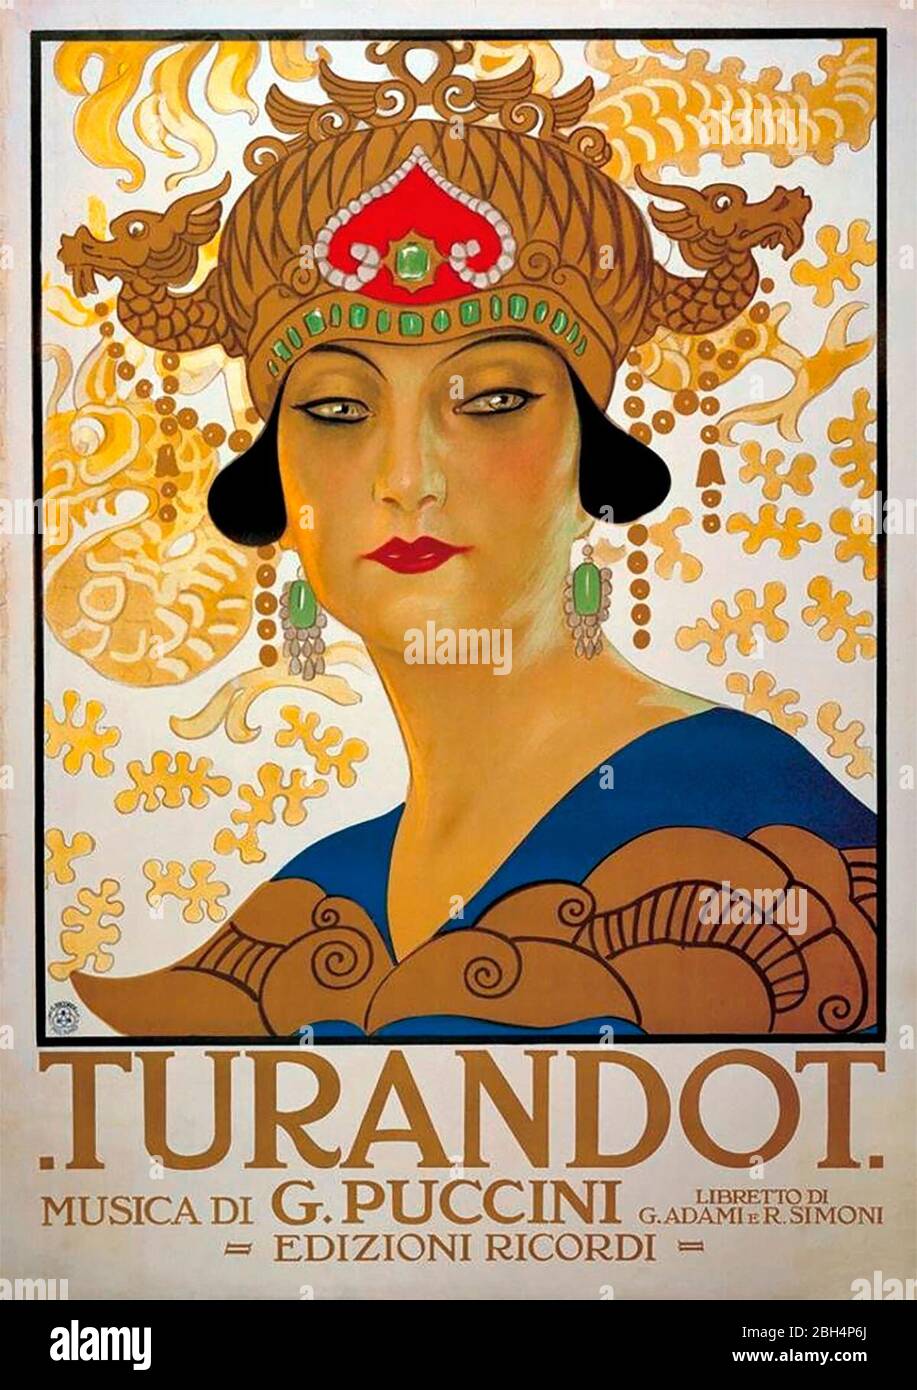 Affiche promotionnelle pour l'opéra Turandot de Giacomo Puccini, le 25 avril 1926 Banque D'Images